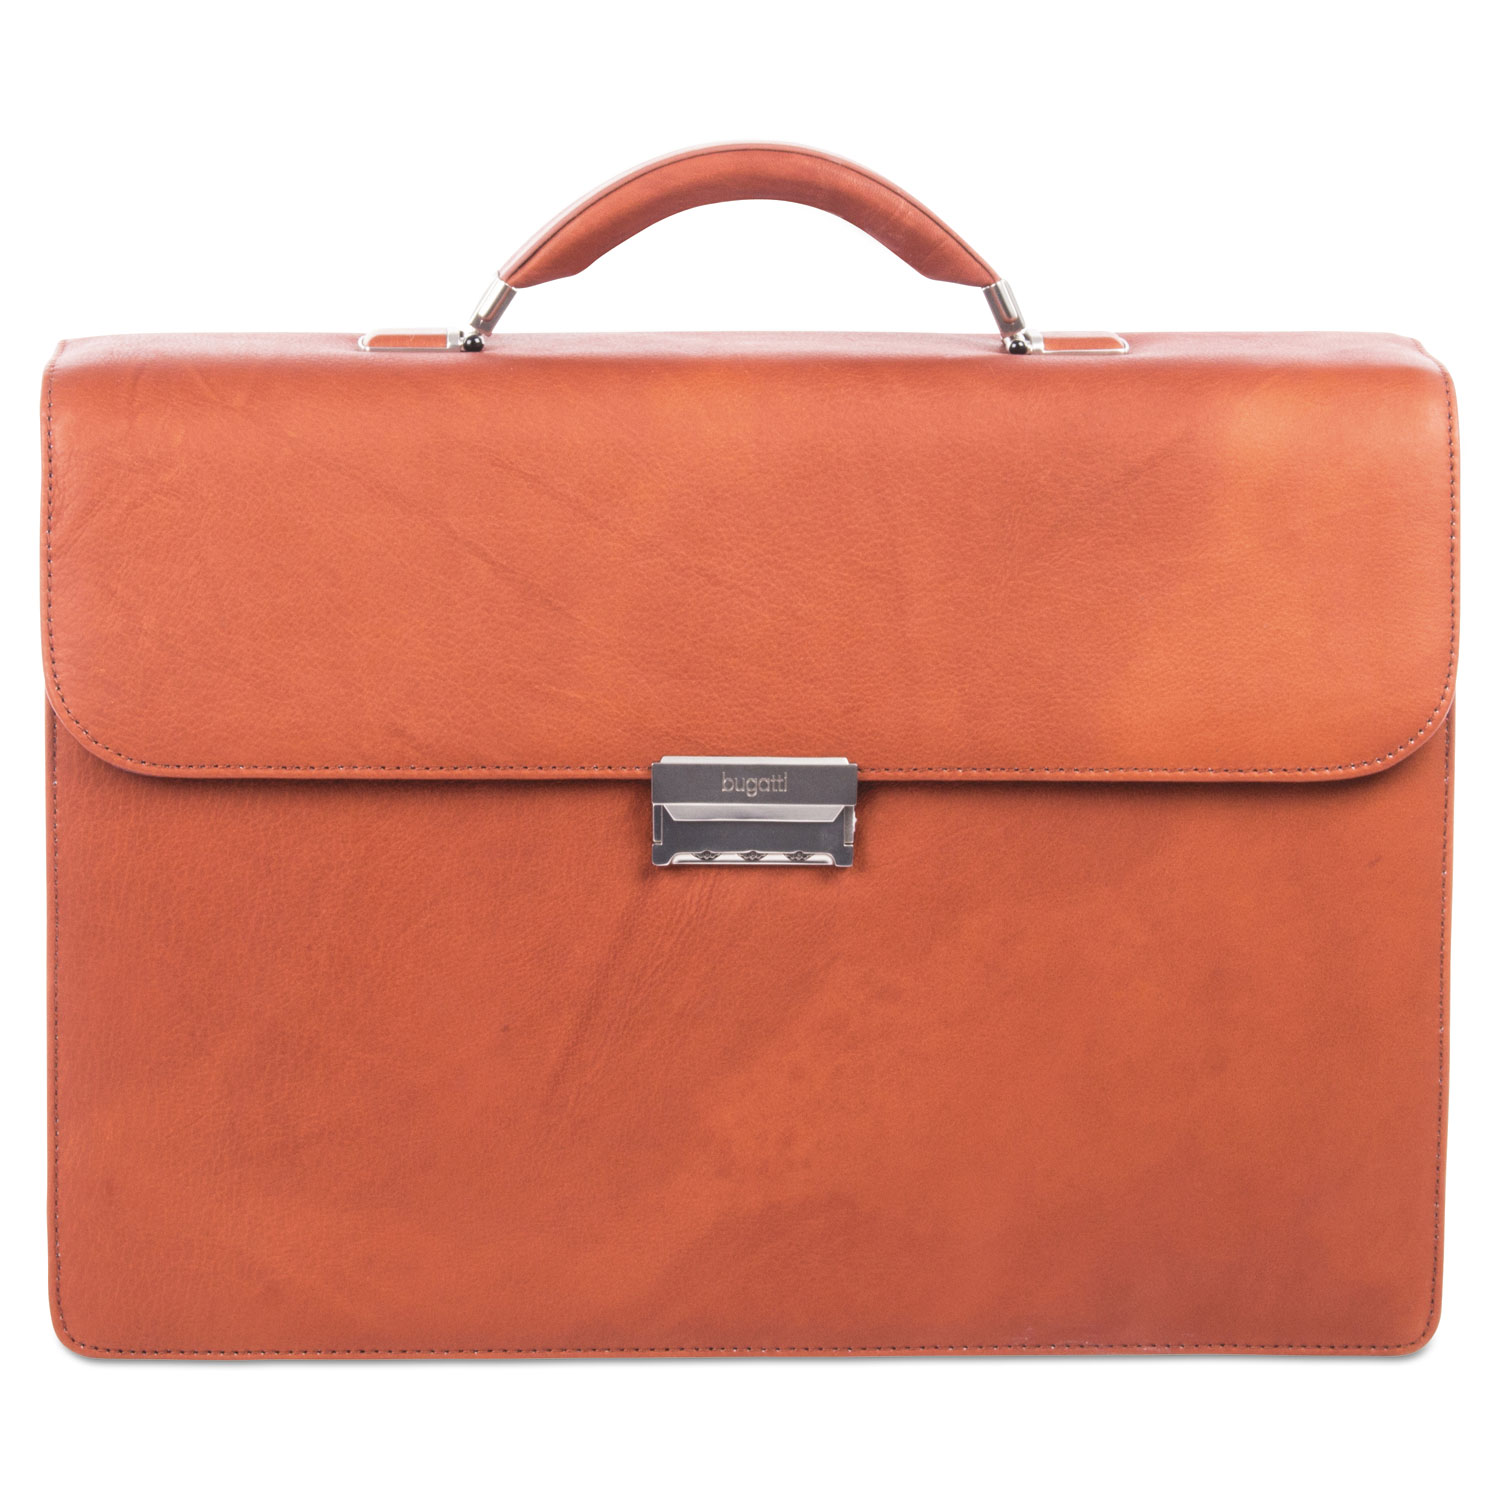 Sartoria Medium Briefcase, 16.5 x 5 x 12, Leather, Cognac